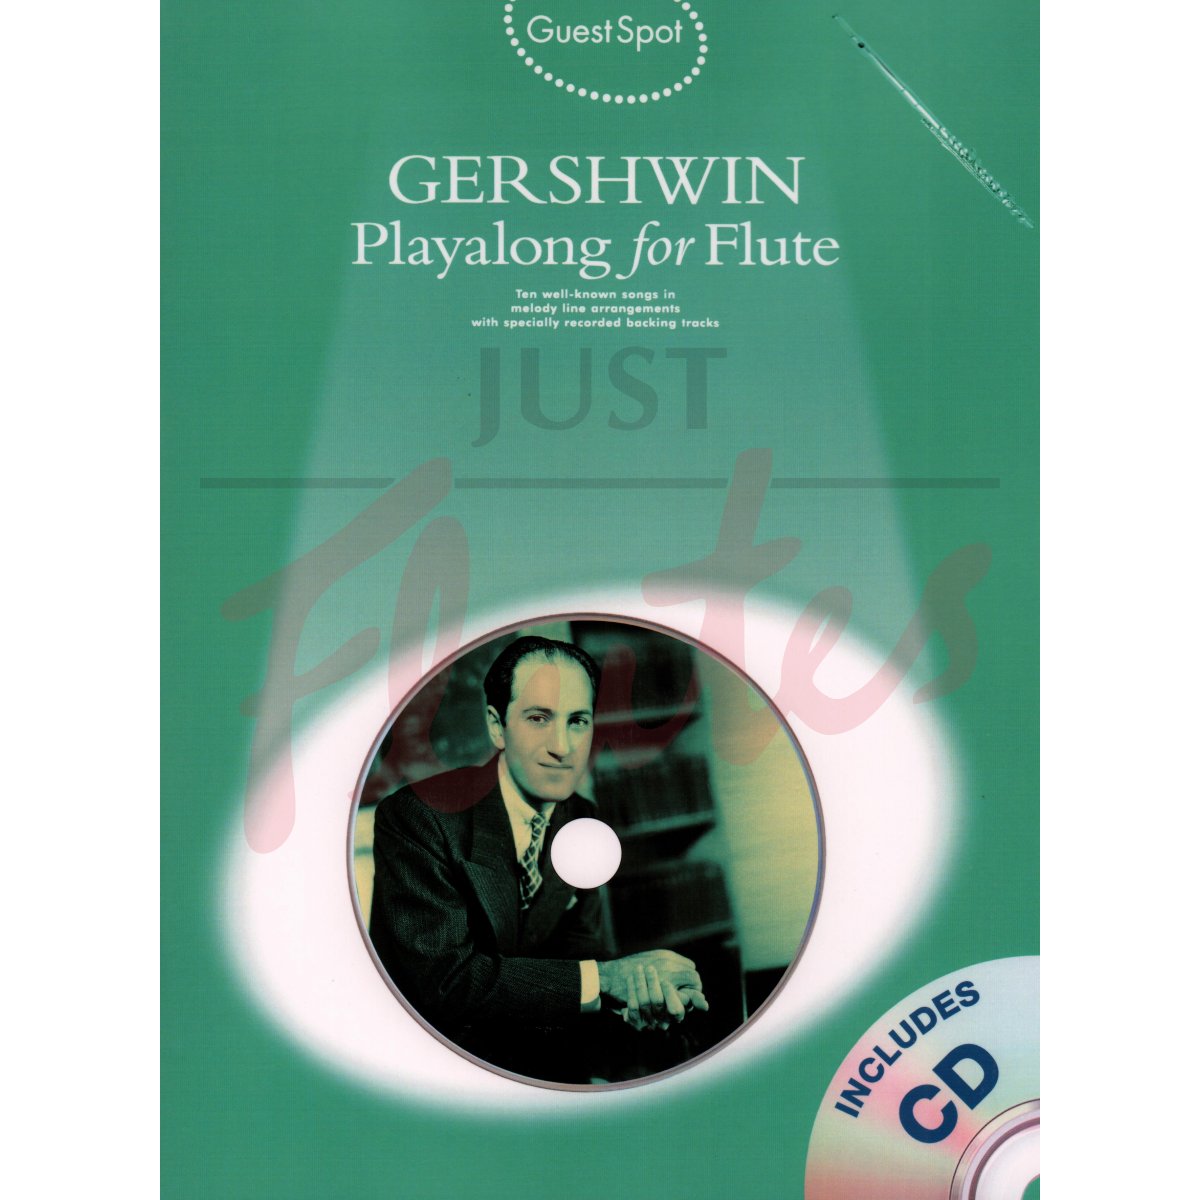 Guest Spot - Gershwin for Flute